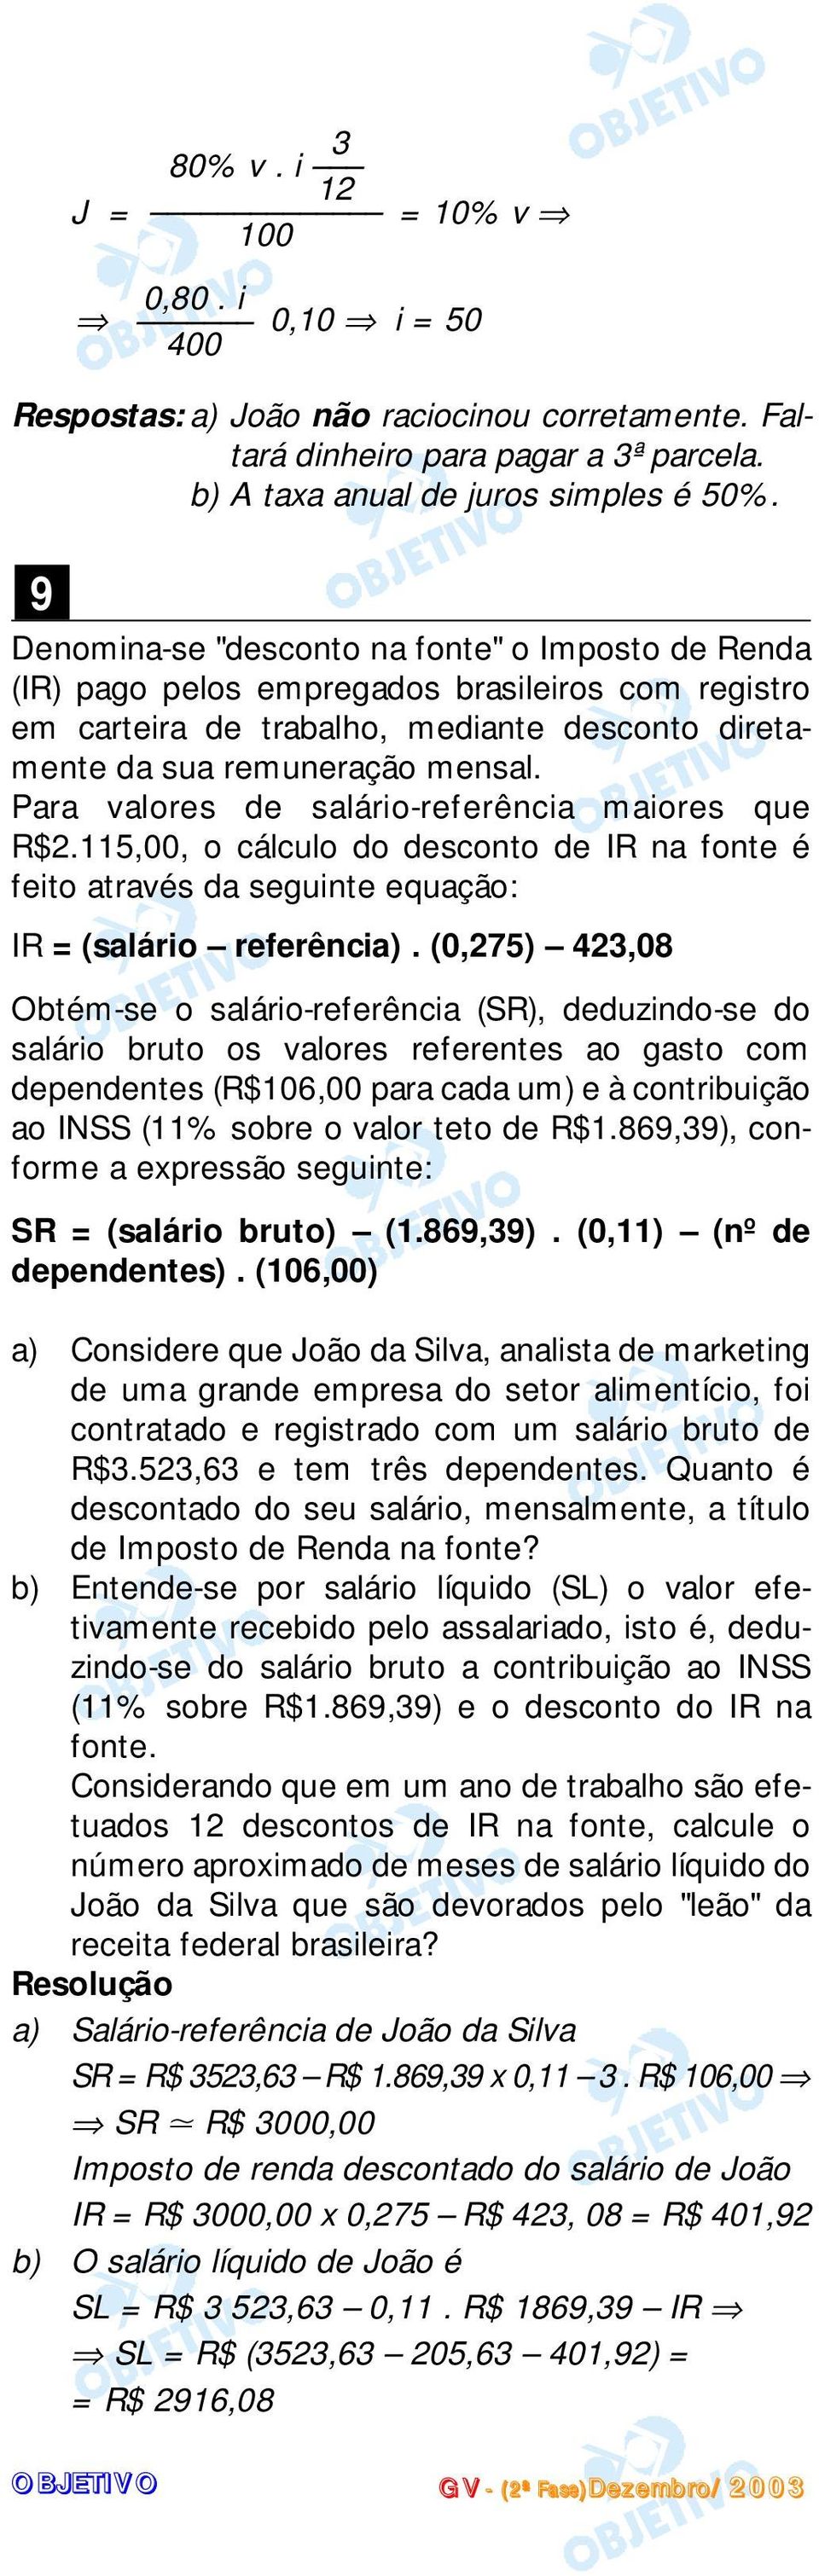 Para valores de salário-referência maiores que R$.5,00, o cálculo do descono de IR na fone é feio aravés da seguine equação: IR = (salário referência).